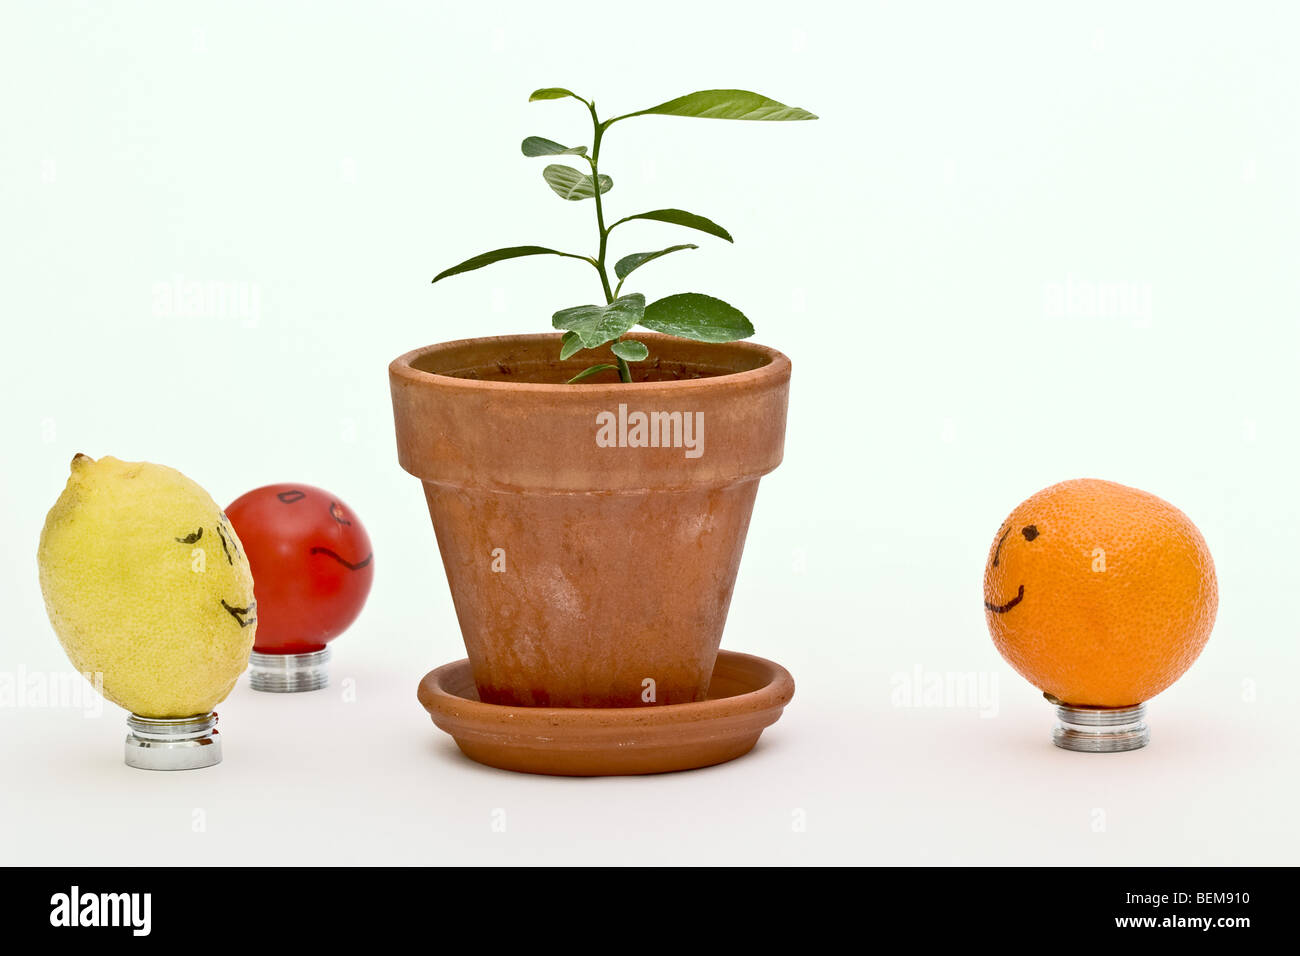 Keylime jaune, orange et petite tomate entourant une nouvelle arborescence de croissance Banque D'Images